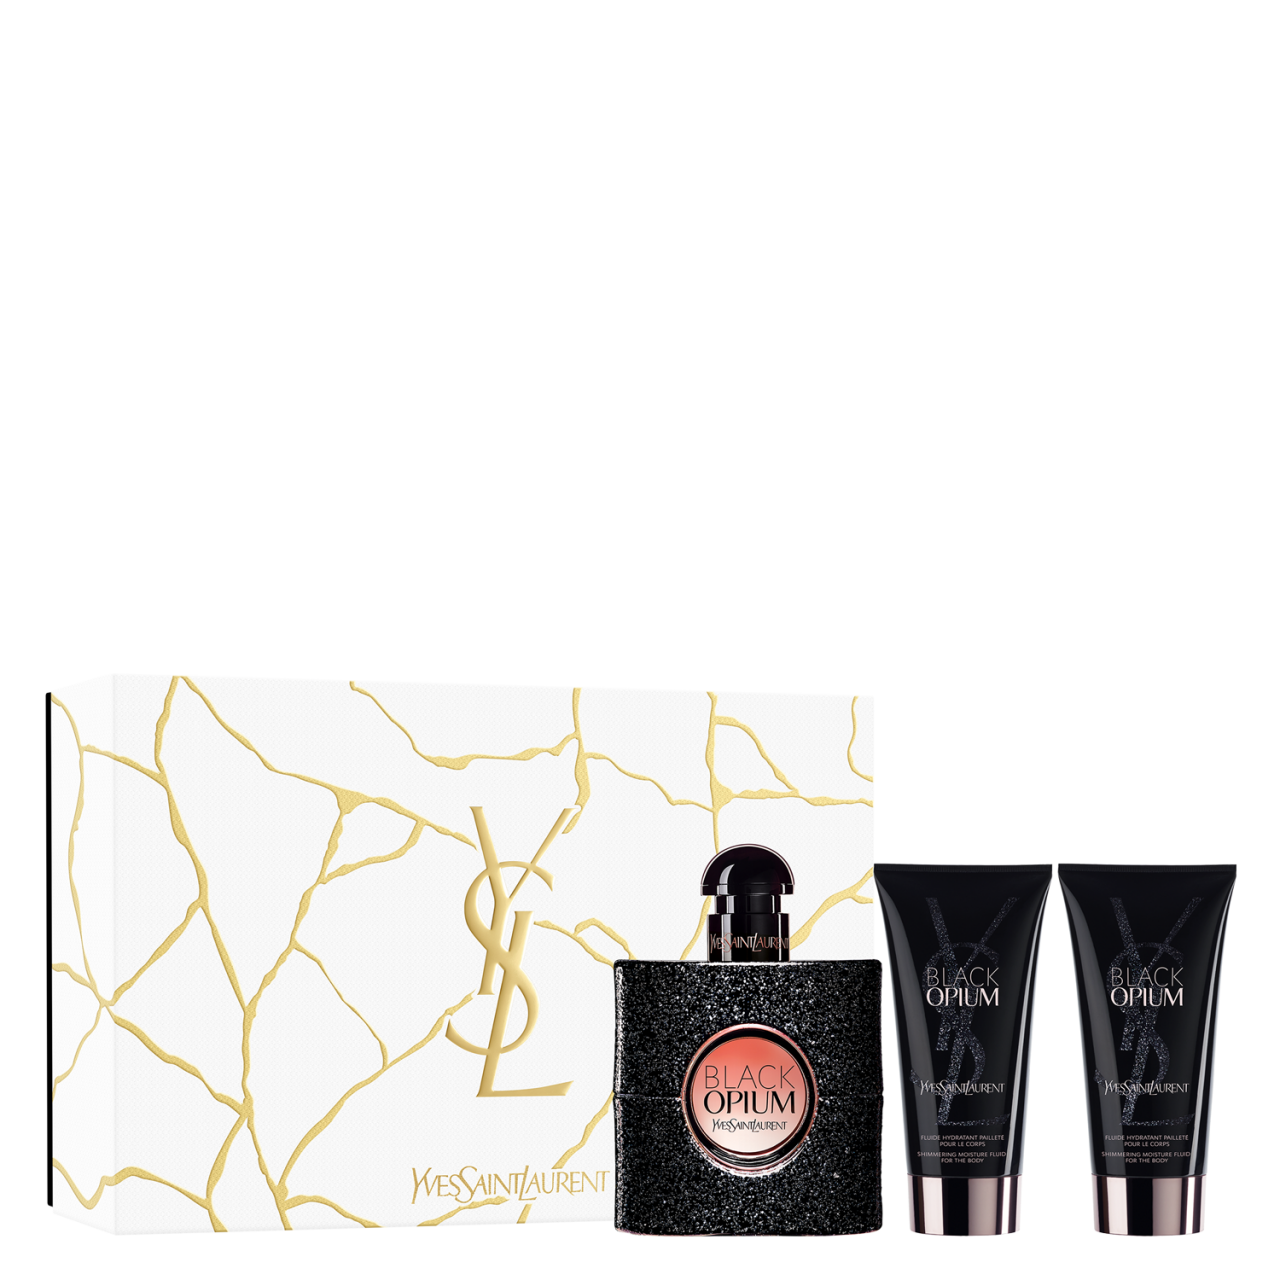 Black Opium - Eau de Parfum Gift Set von Yves Saint Laurent